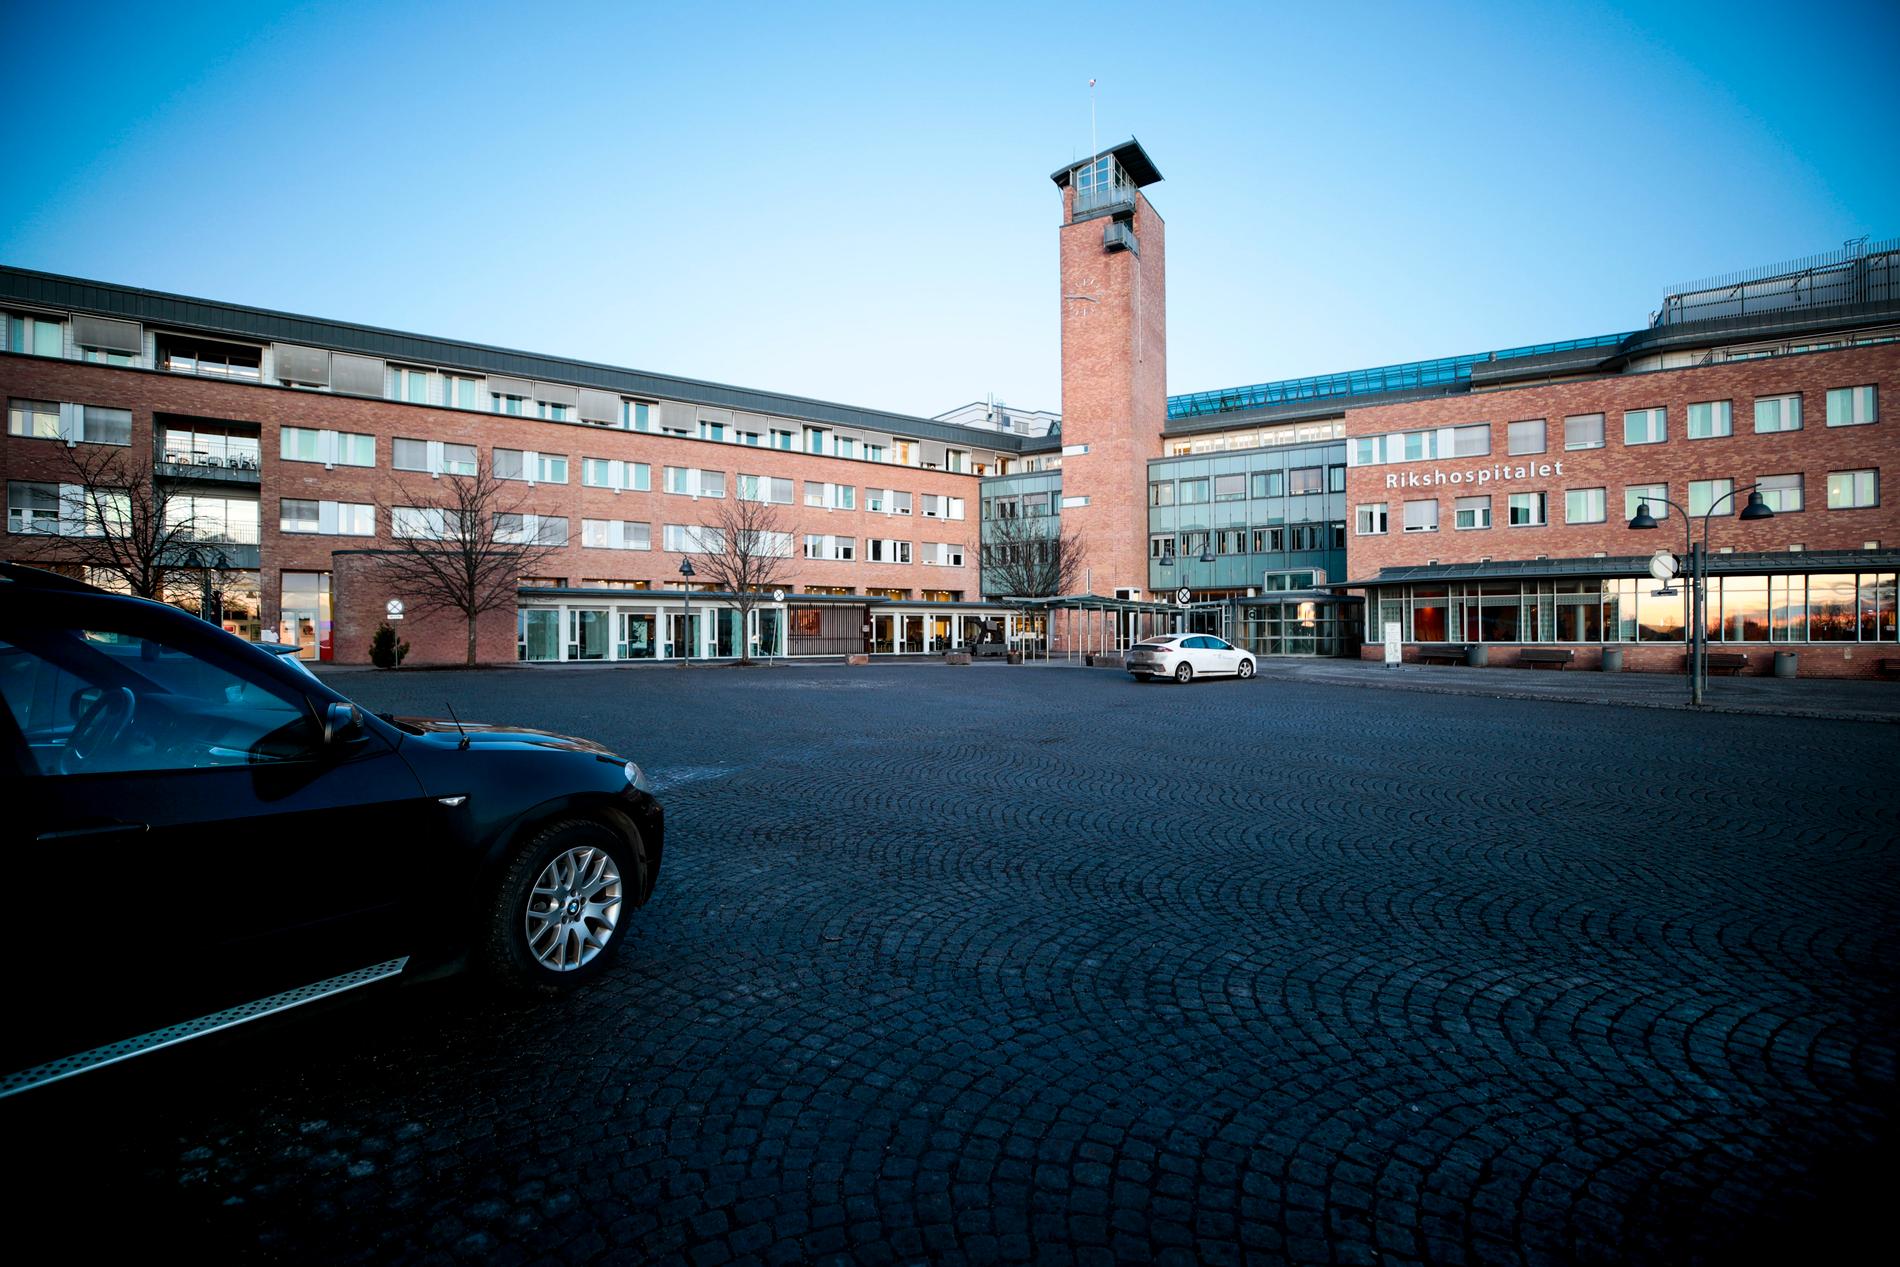 Oslo universitetssykehus omfattar bland annat Rikshospitalet i den norska huvudstaden. Arkivbild.